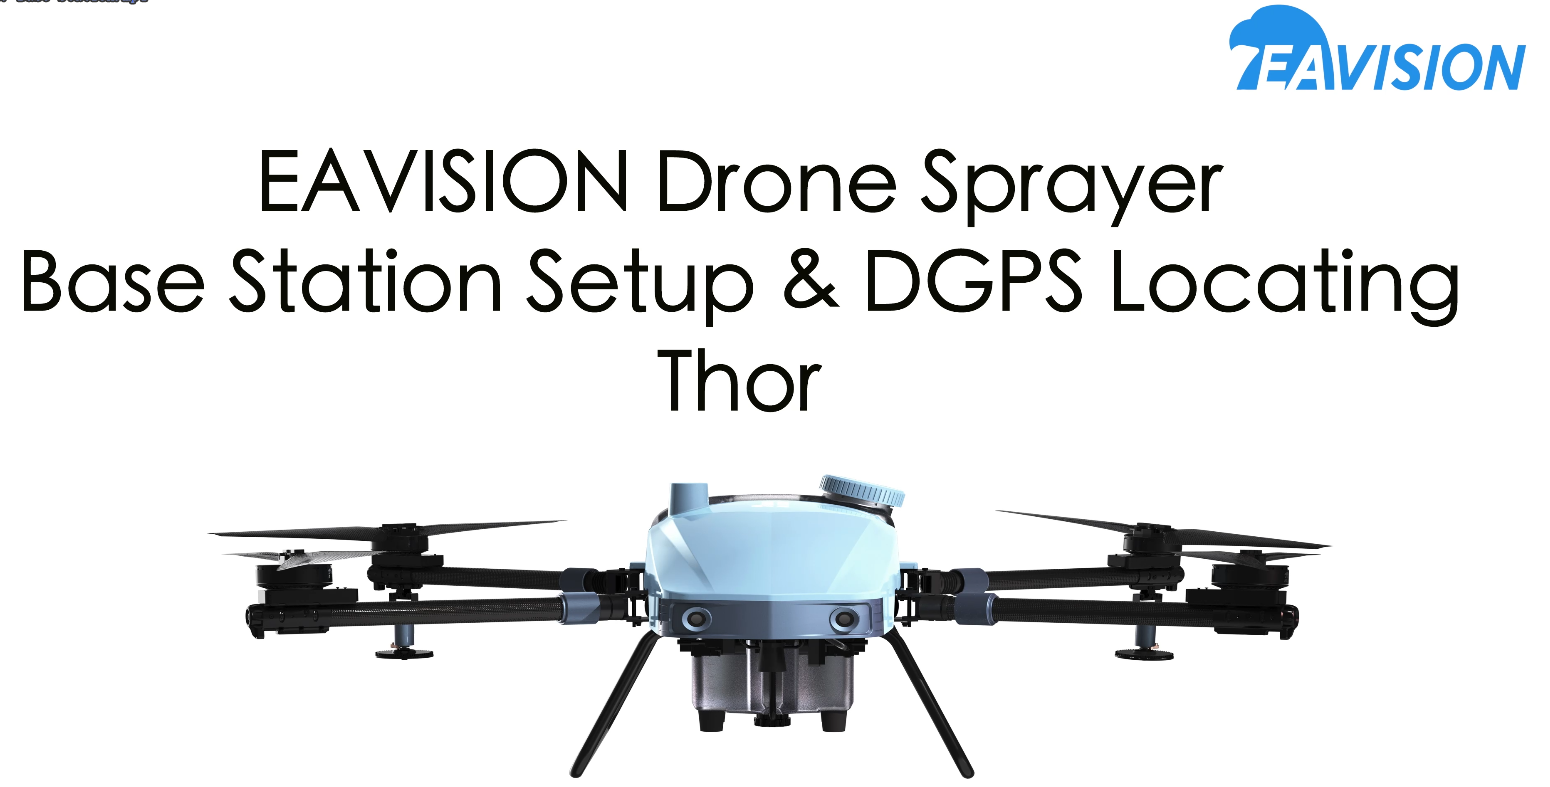 EAVISION - Thor Base Station Setup & DGPS Locating